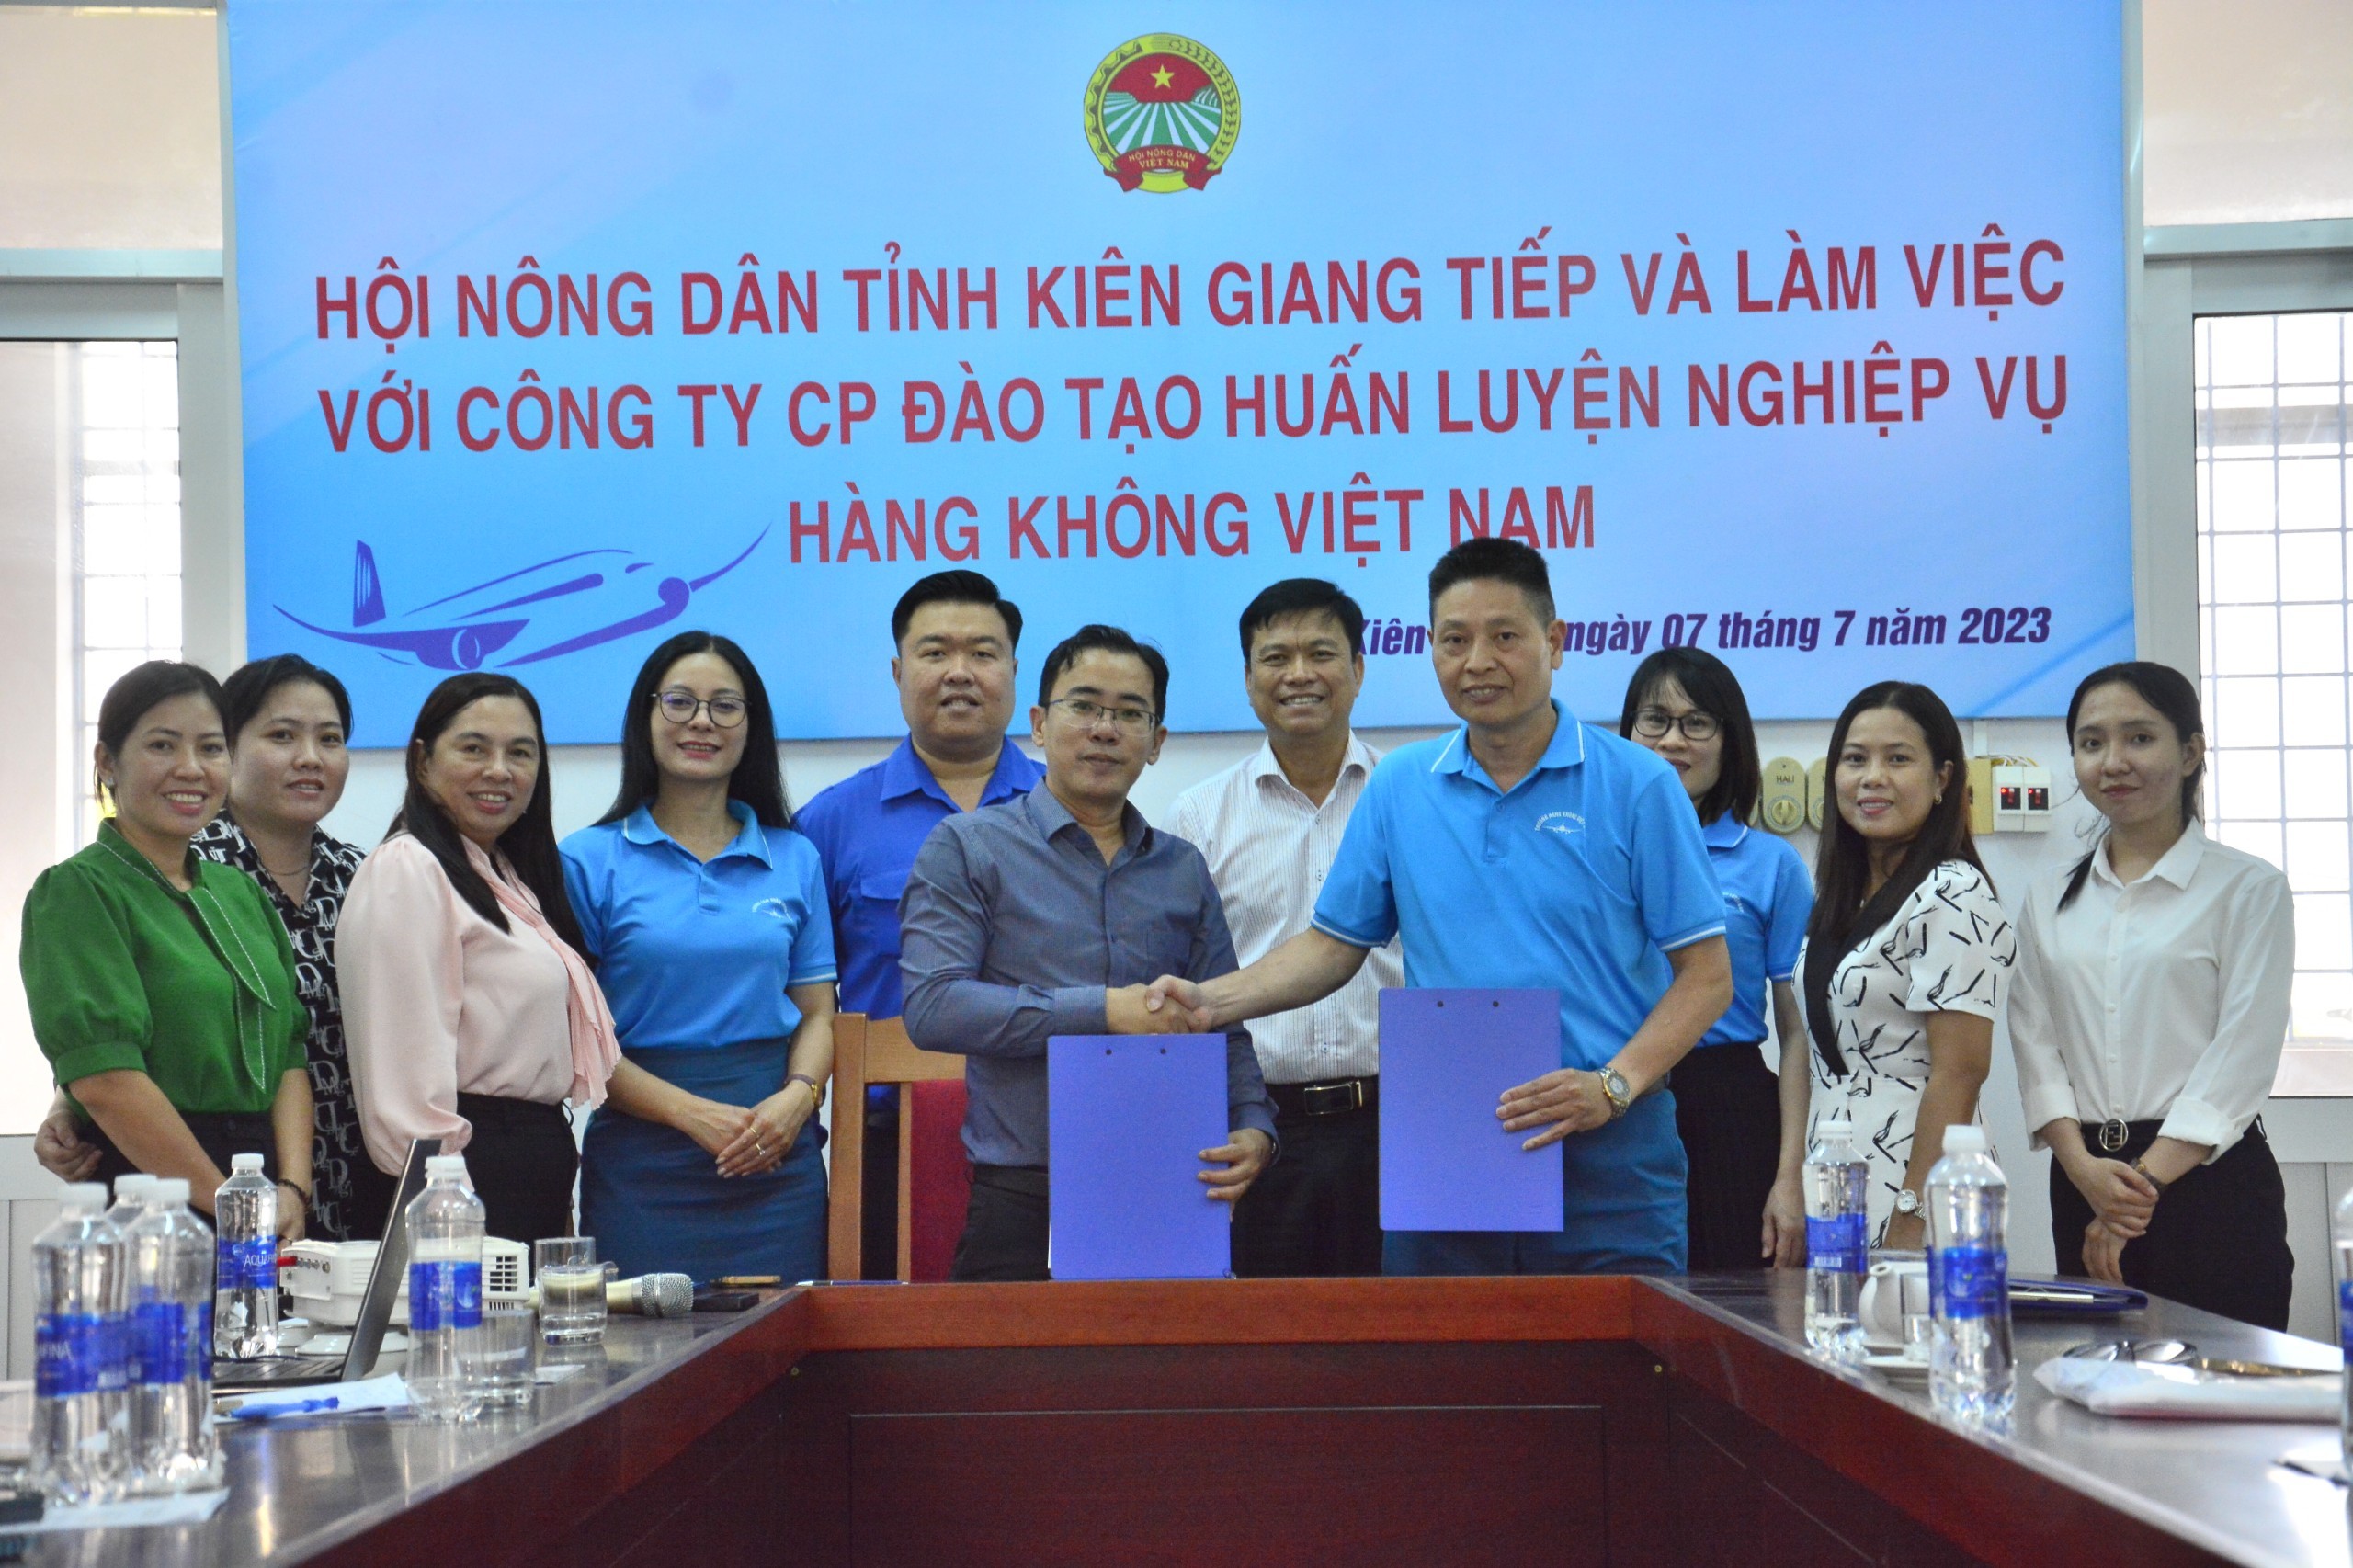 Ký kết Biên bản ghi nhớ hợp tác về tuyển sinh, đào tạo và cung ứng nguồn nhân lực hàng không của Công ty VNAS và Hội Nông dân tỉnh Kiên Giang